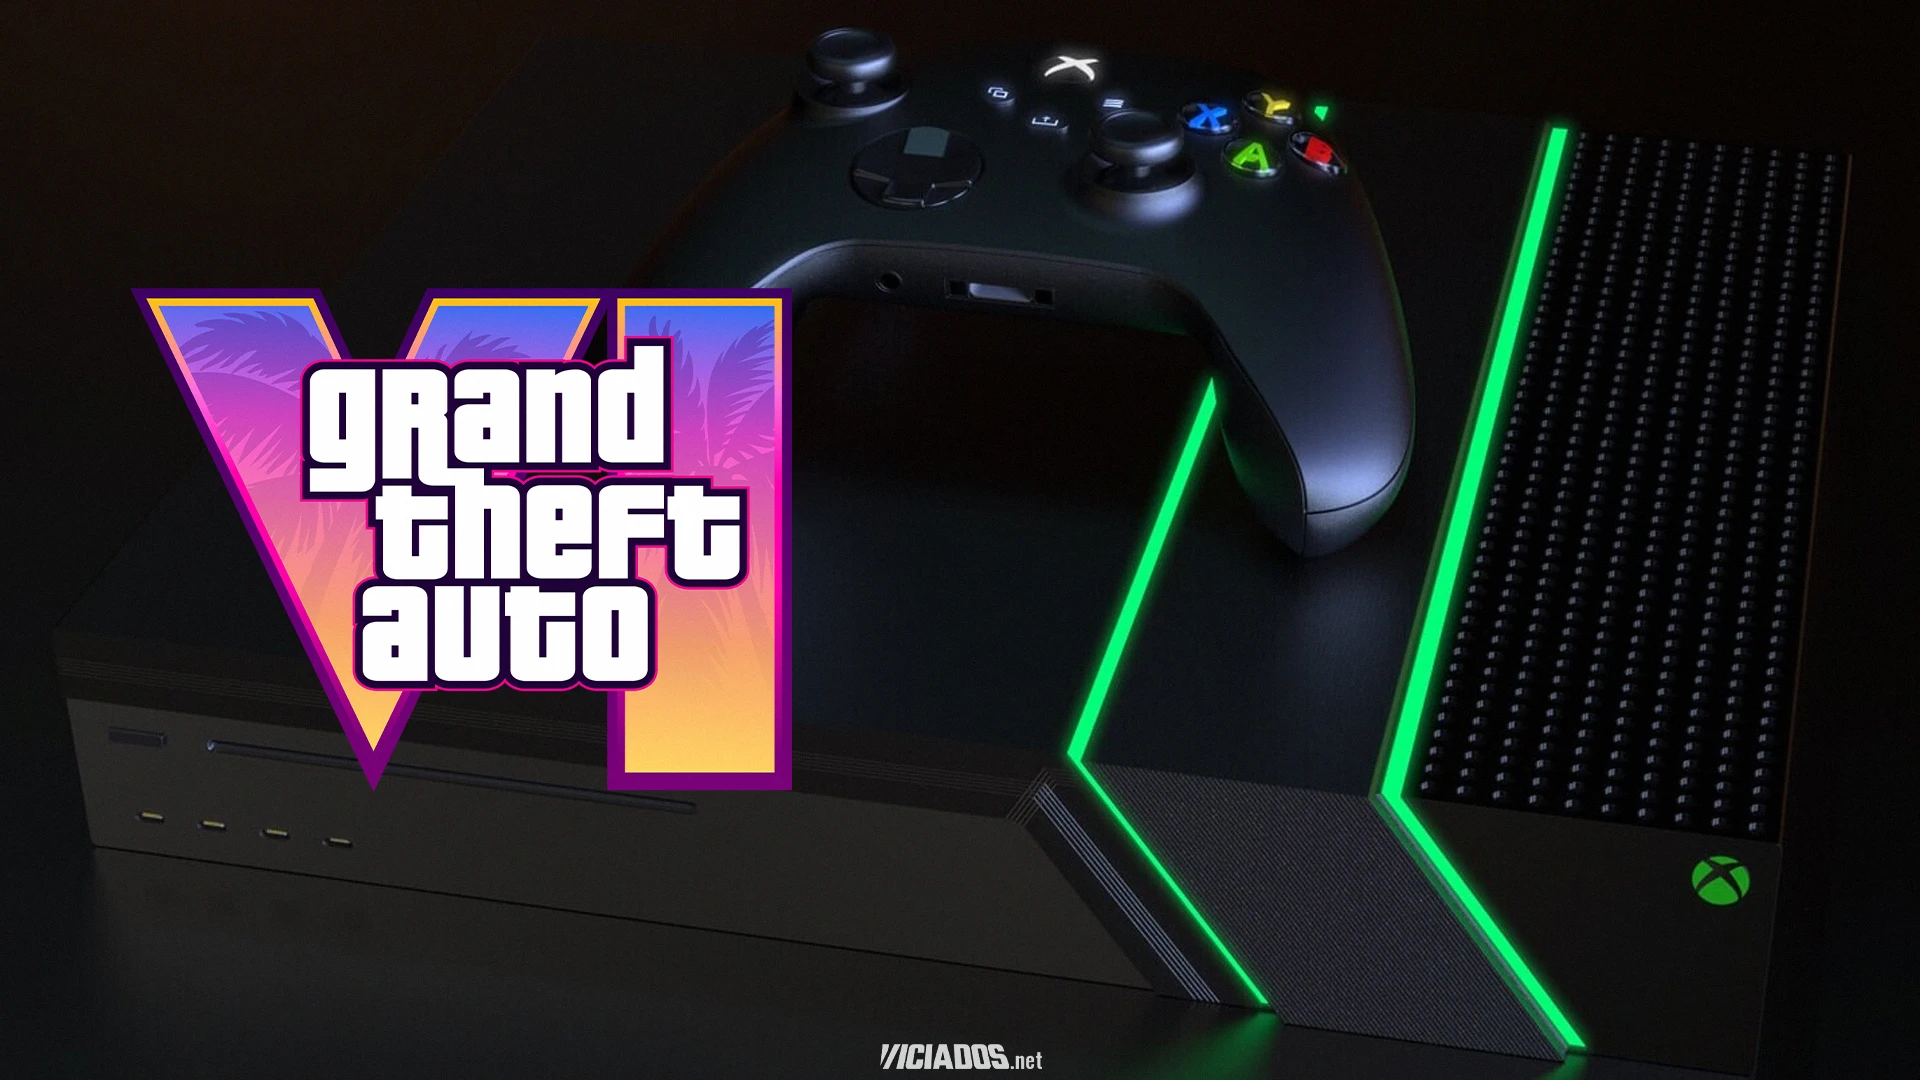 Hardware do novo Xbox será perfeito para jogar o tão aguardado GTA 6; Veja os detalhes! 2024 Portal Viciados